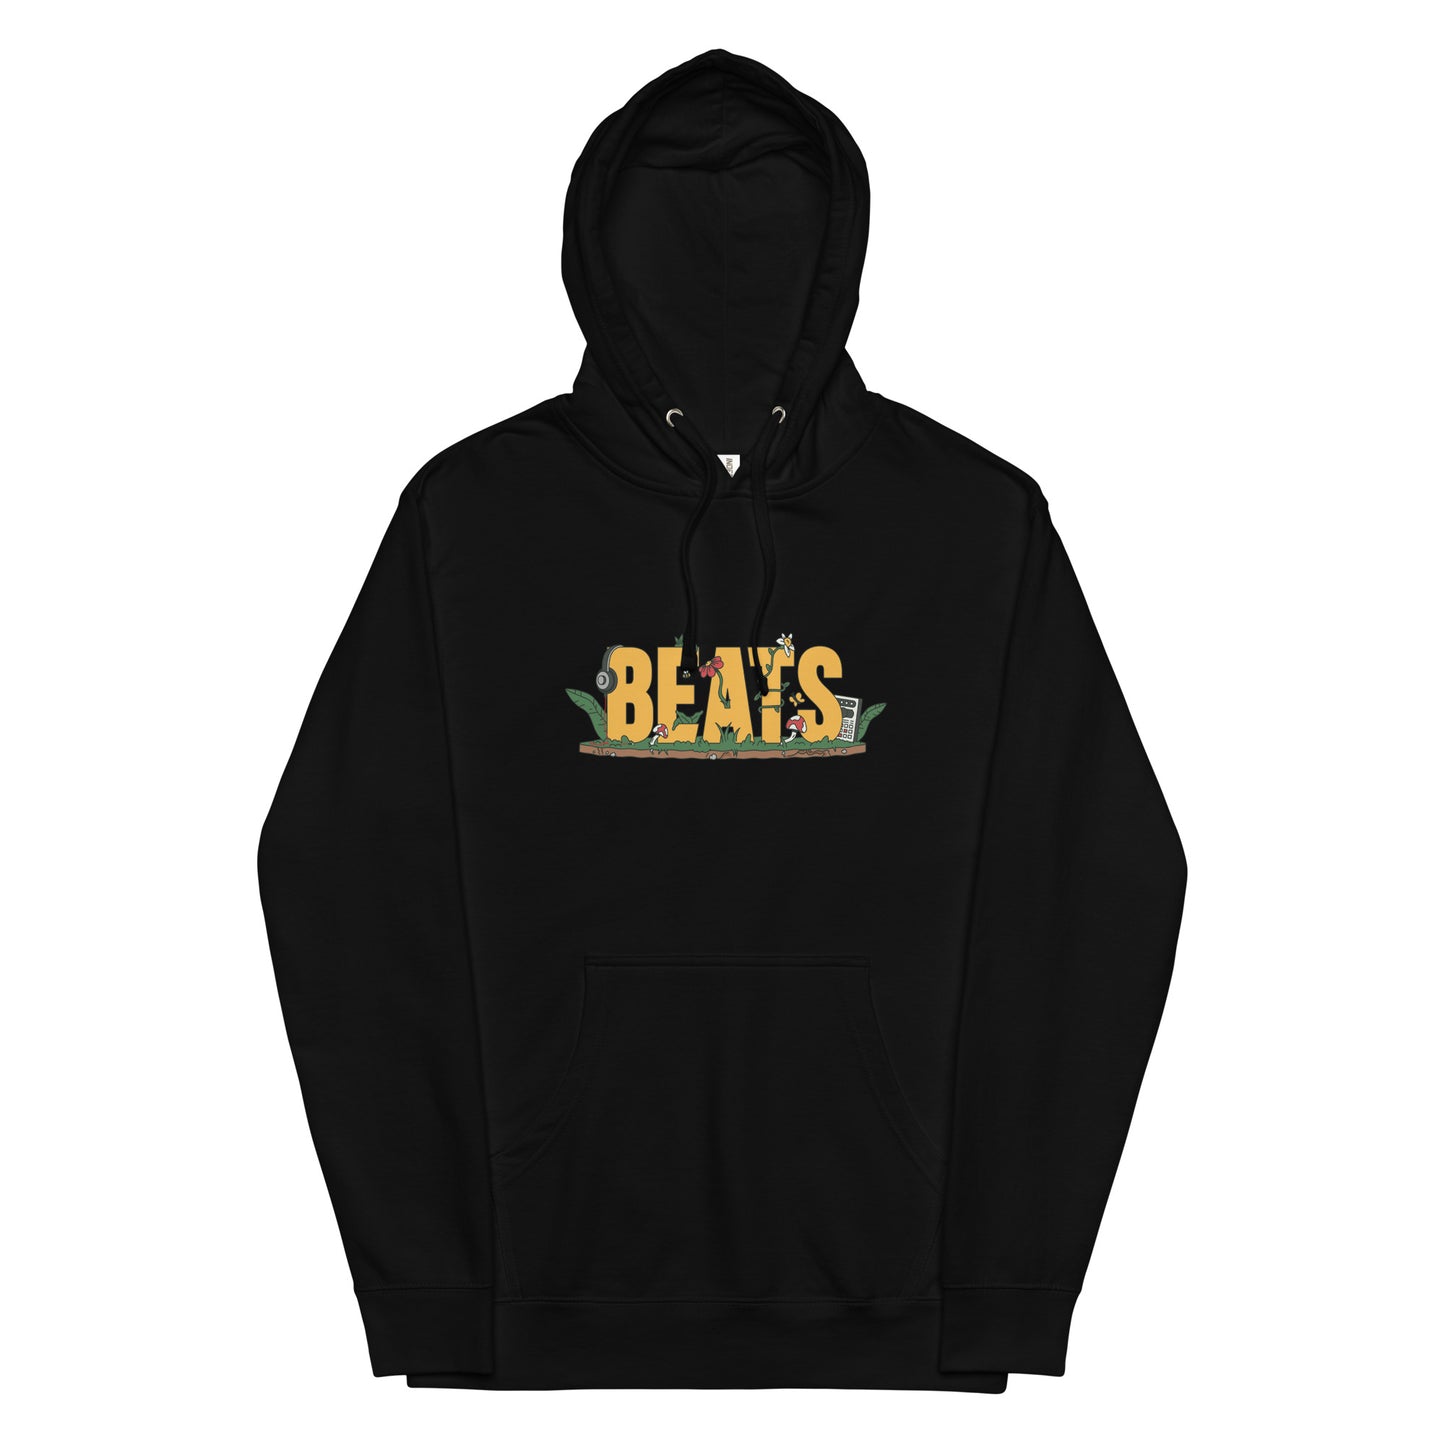 BEATS hoodie